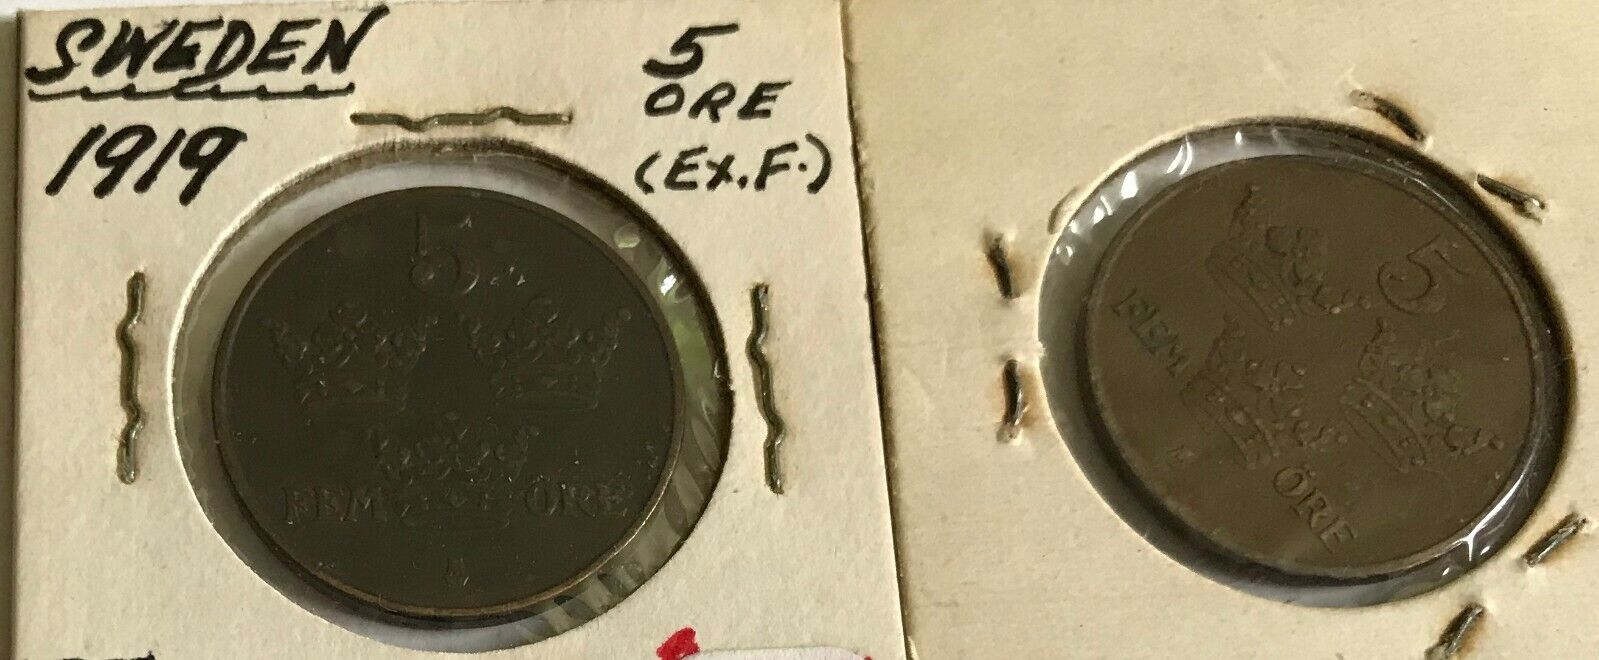 Sweden - lot of 2 coins - 5 ORE - 1919 EF & 1921 AU Без бренда